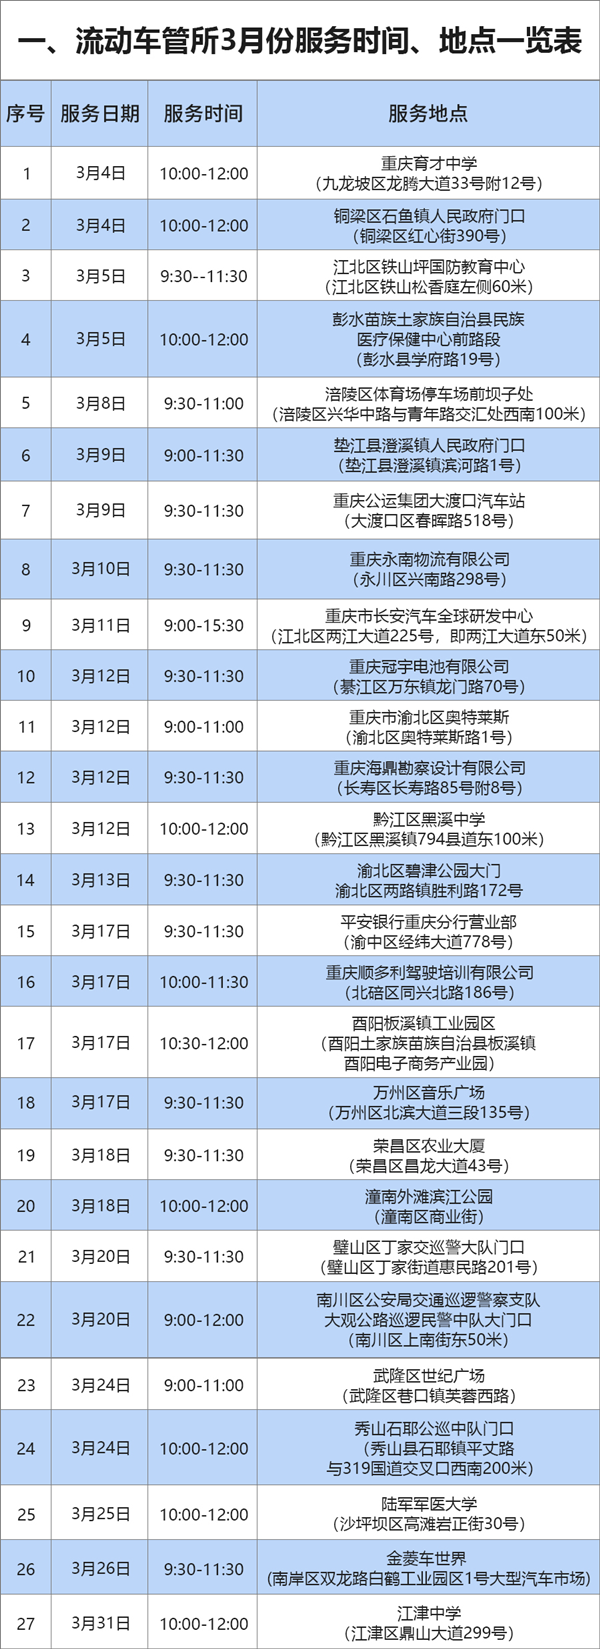 【B】重庆交巡警3月份将组织车驾管上门服务27场次